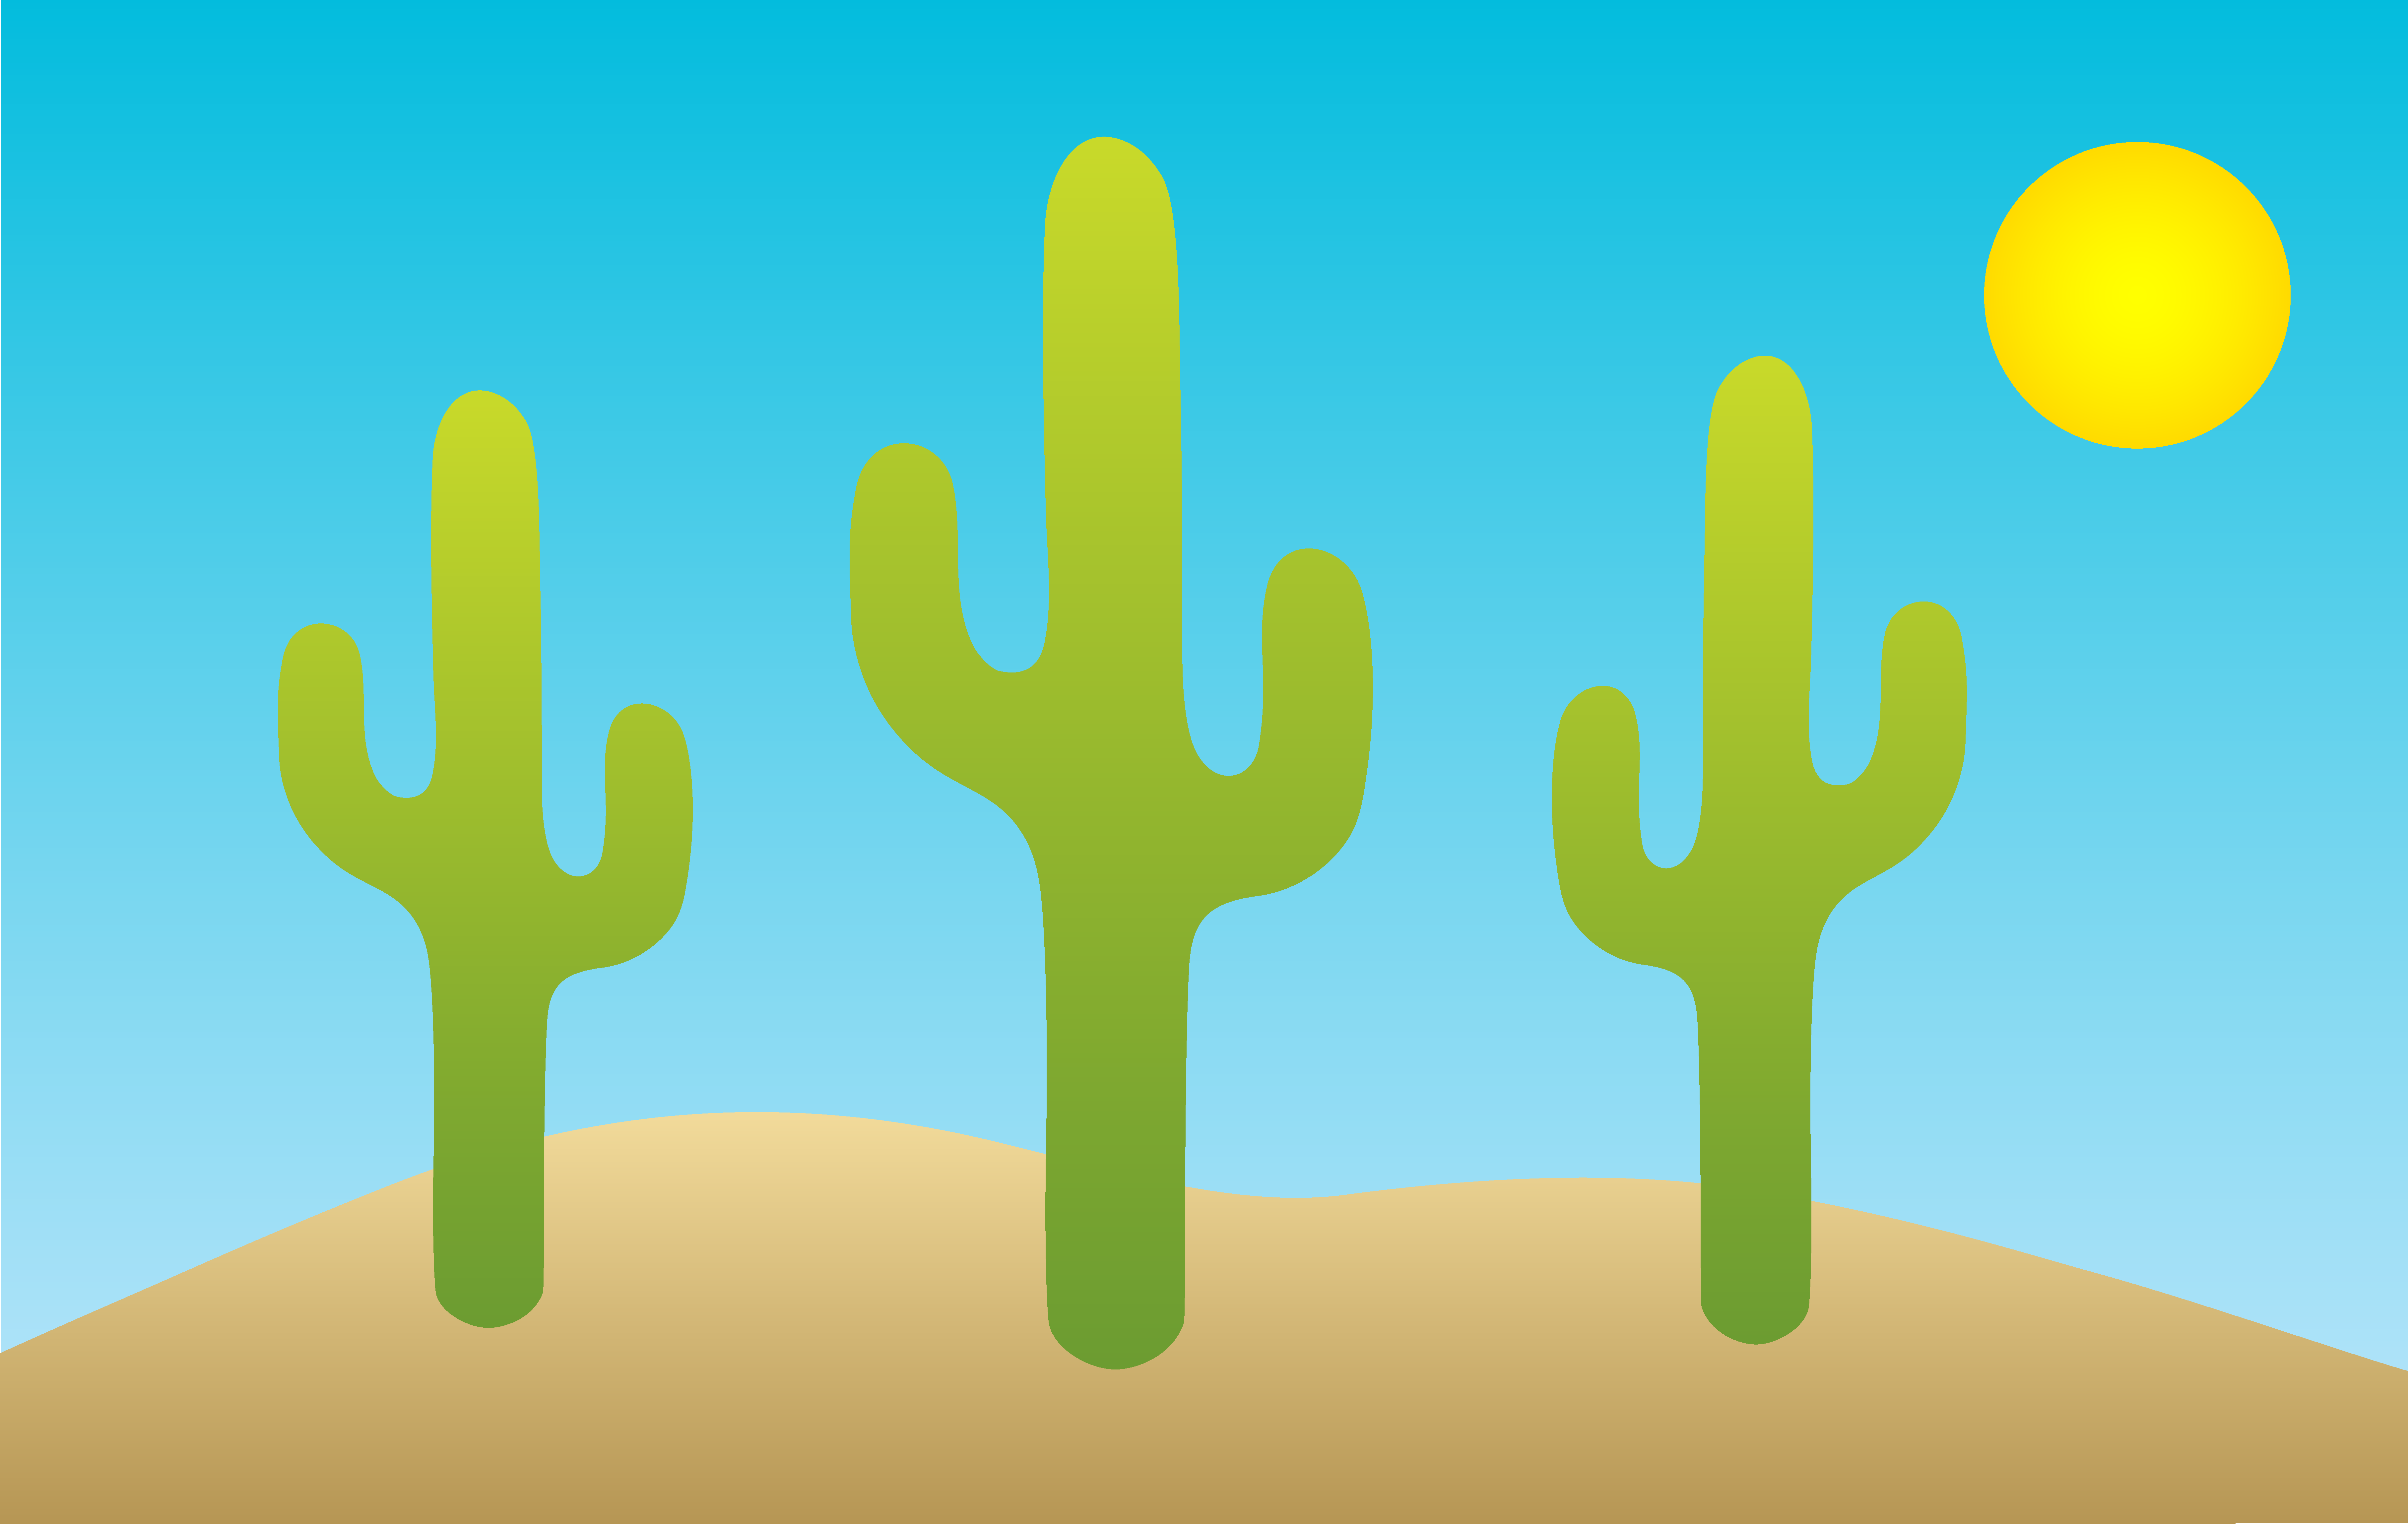 Cactus Images Free